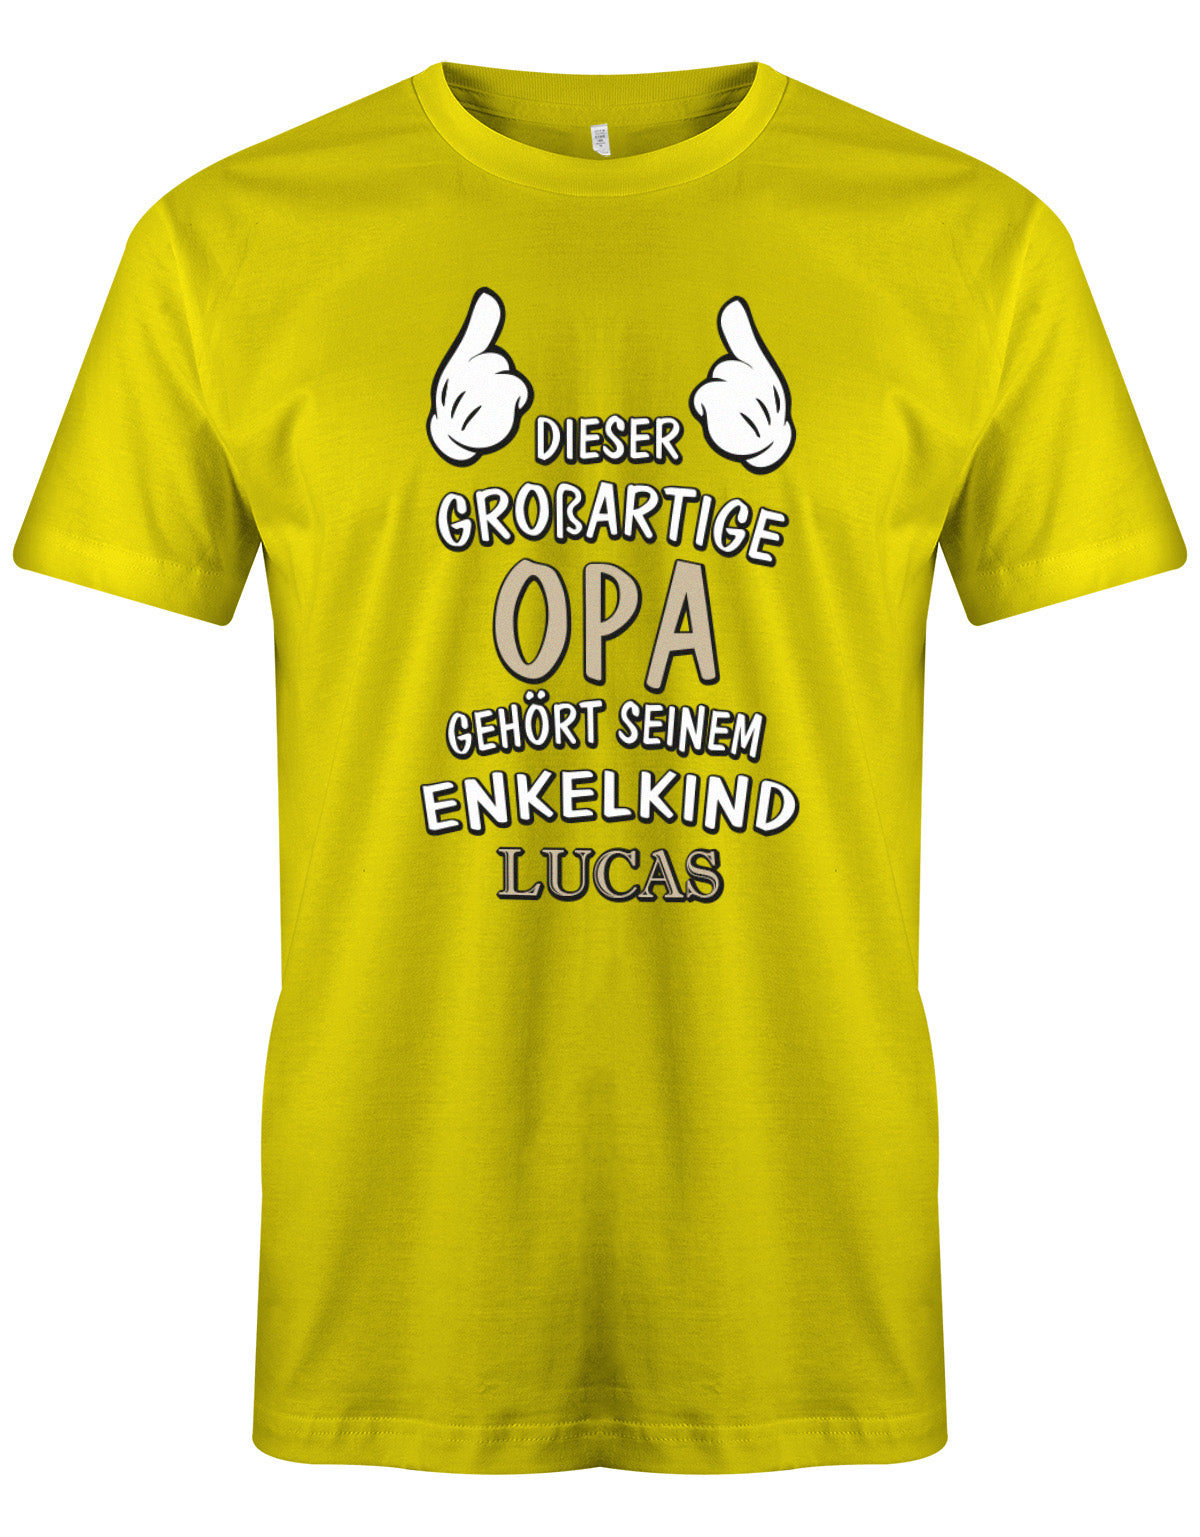 Opa Shirt personalisiert - Dieser großartige Opa gehört seinen Enkelkind. Mit Namen vom Enkelkind. Gelb